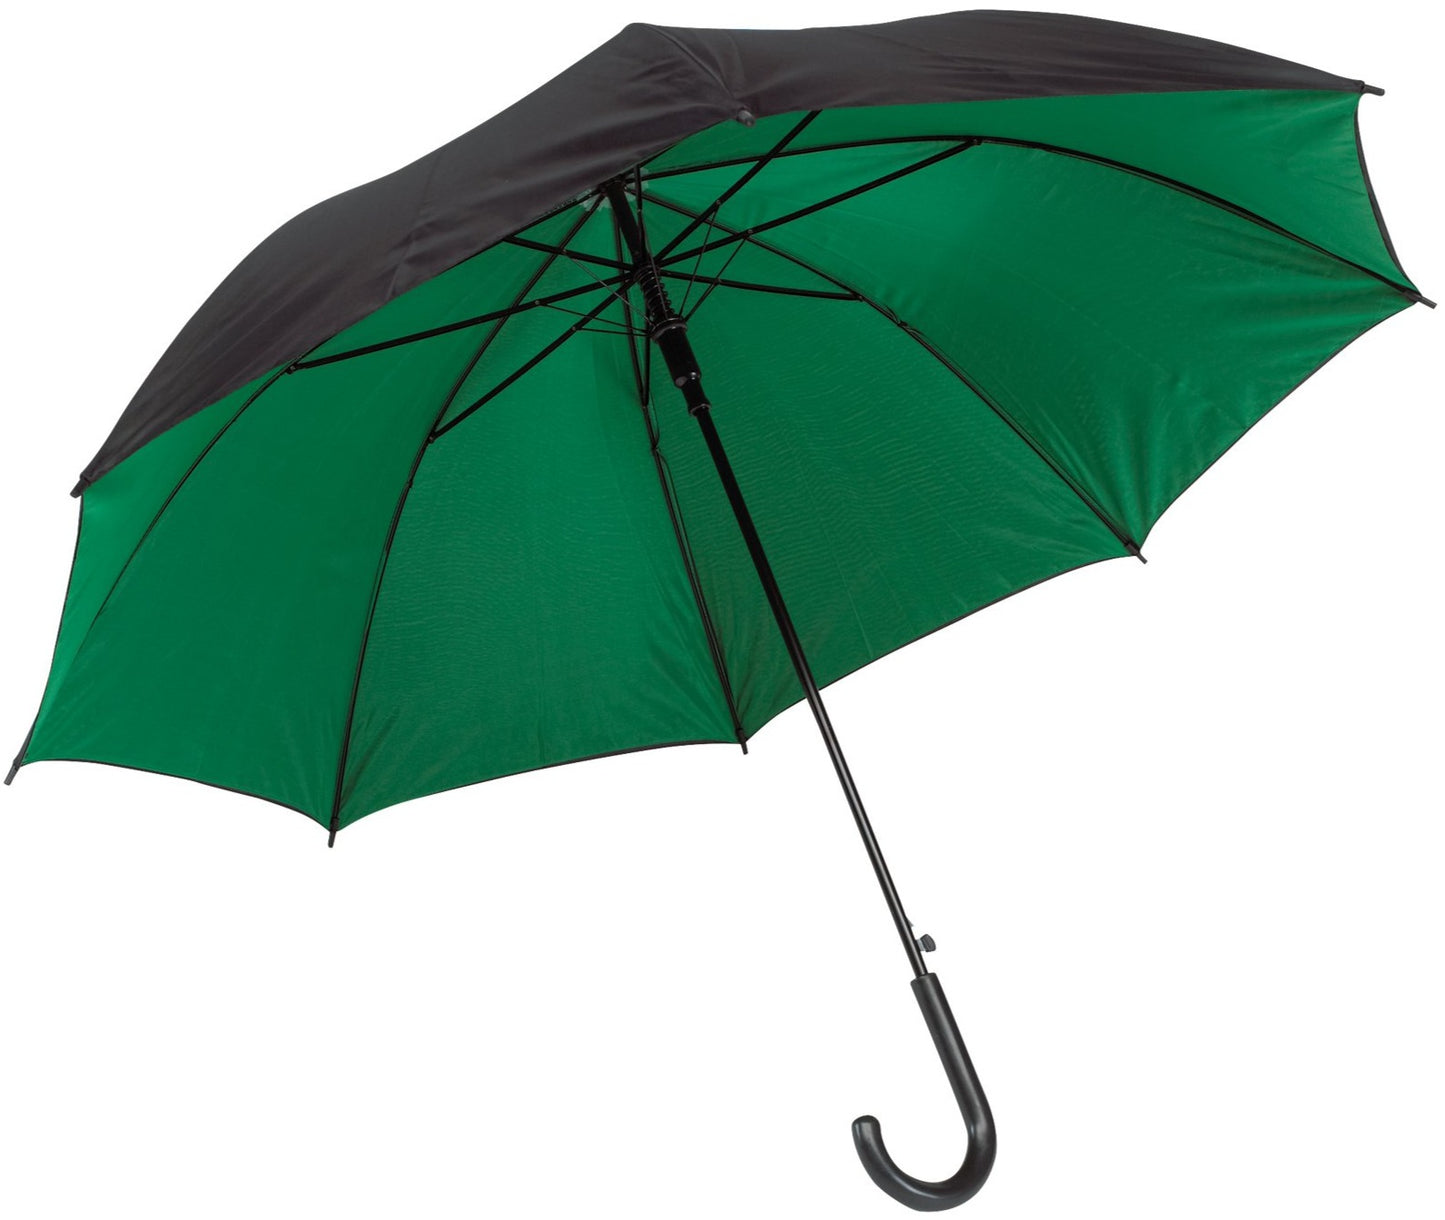 Πράσινη (μεσαίο)/μαύρη ομπρέλα βροχής, με διπλό ύφασμα, μακριά και αυτόματη.